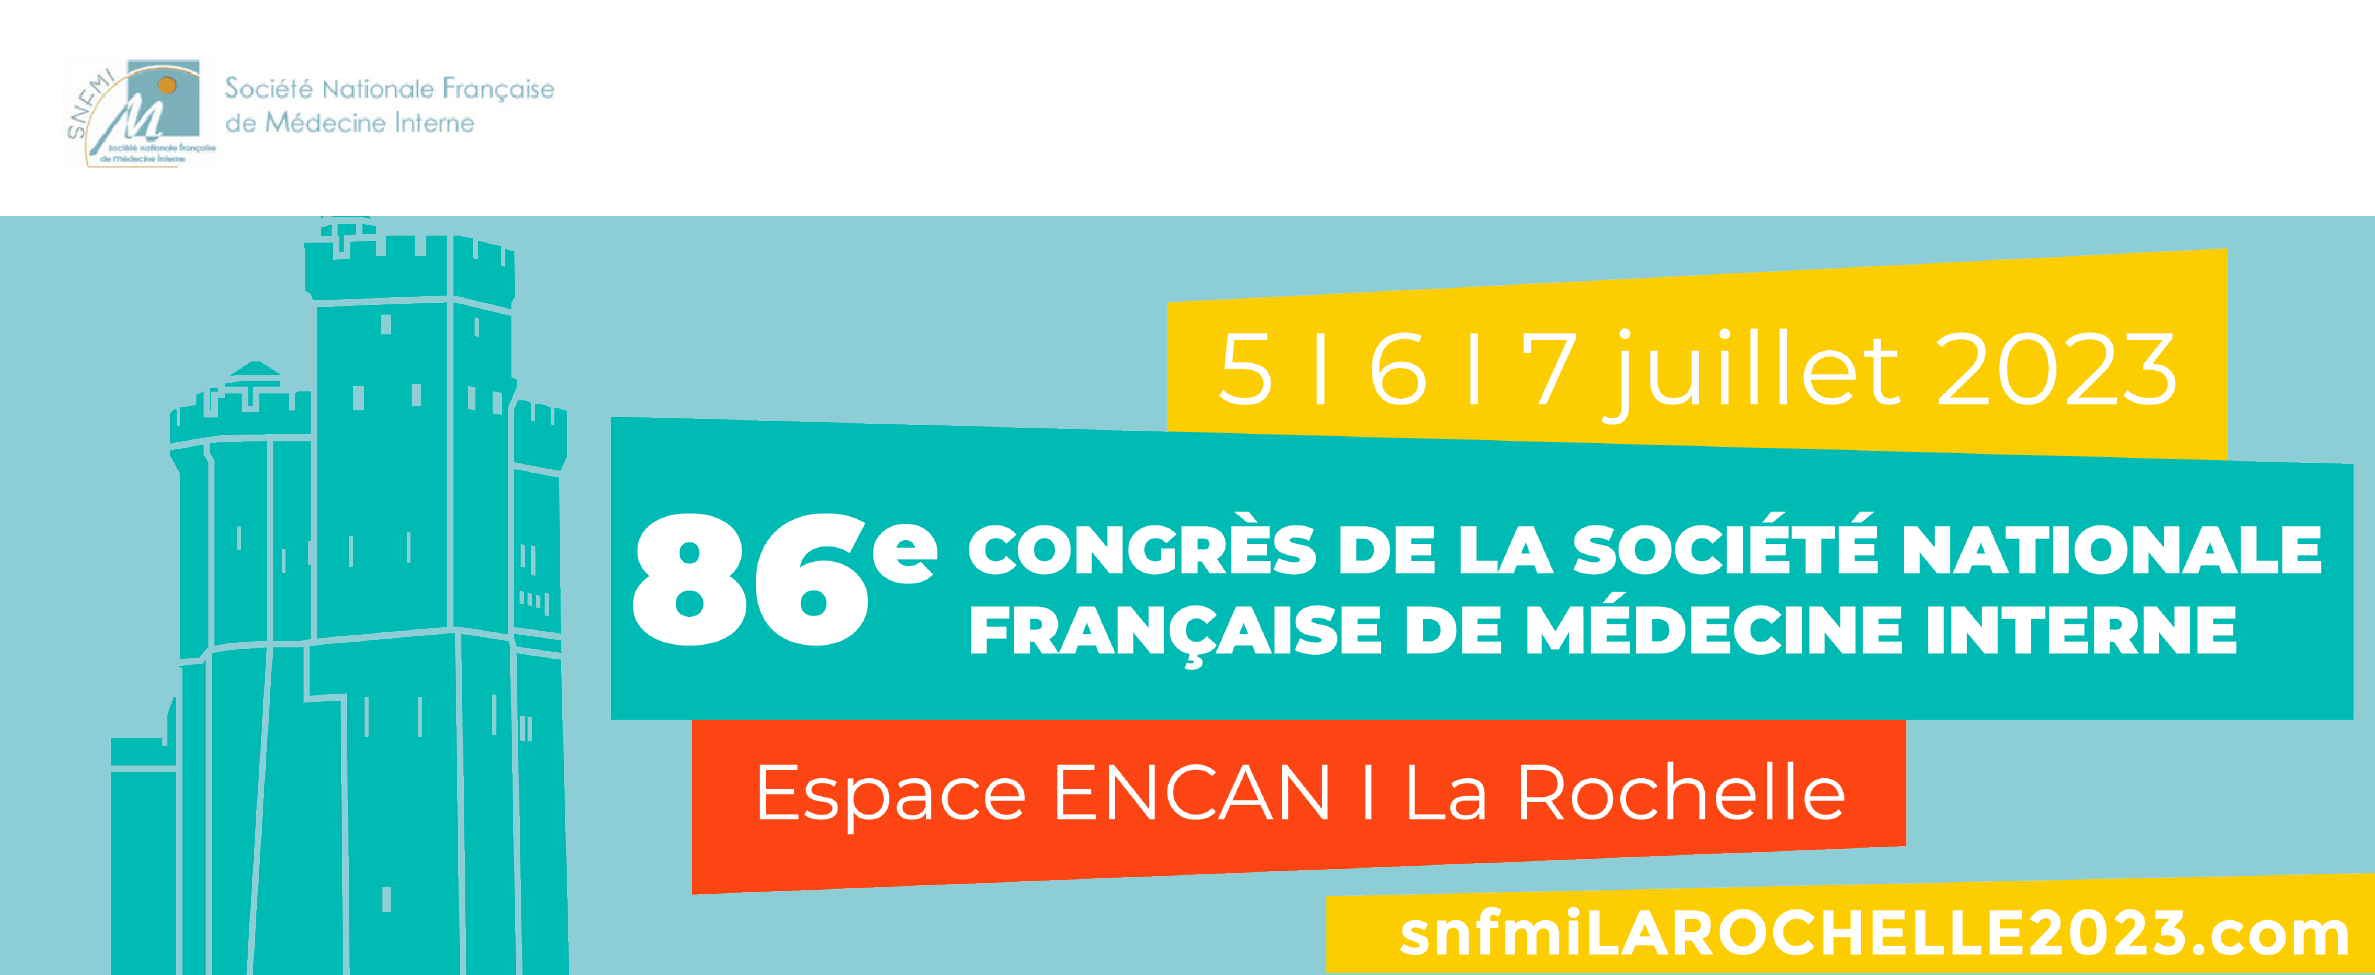 86e Congrès de Société Nationale de Médecine Interne - SNFMI 2023